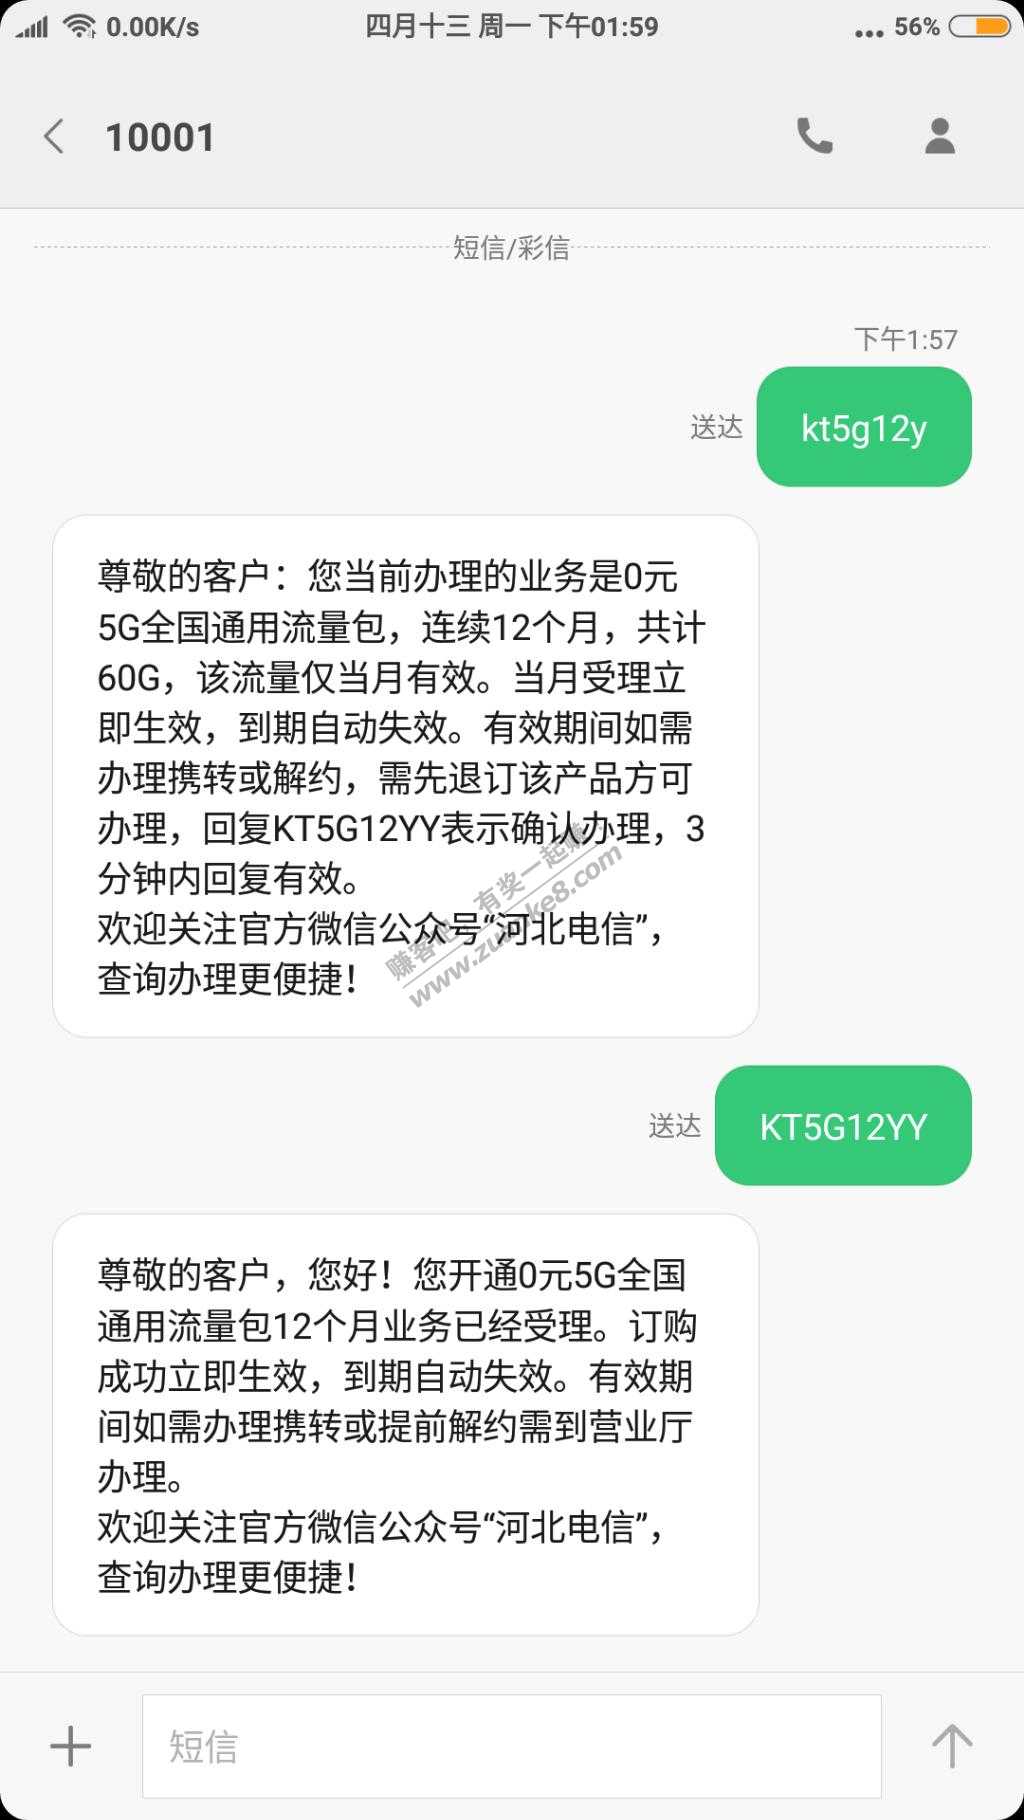 电信福利领取60G流量河北阿福卡领取成功-惠小助(52huixz.com)